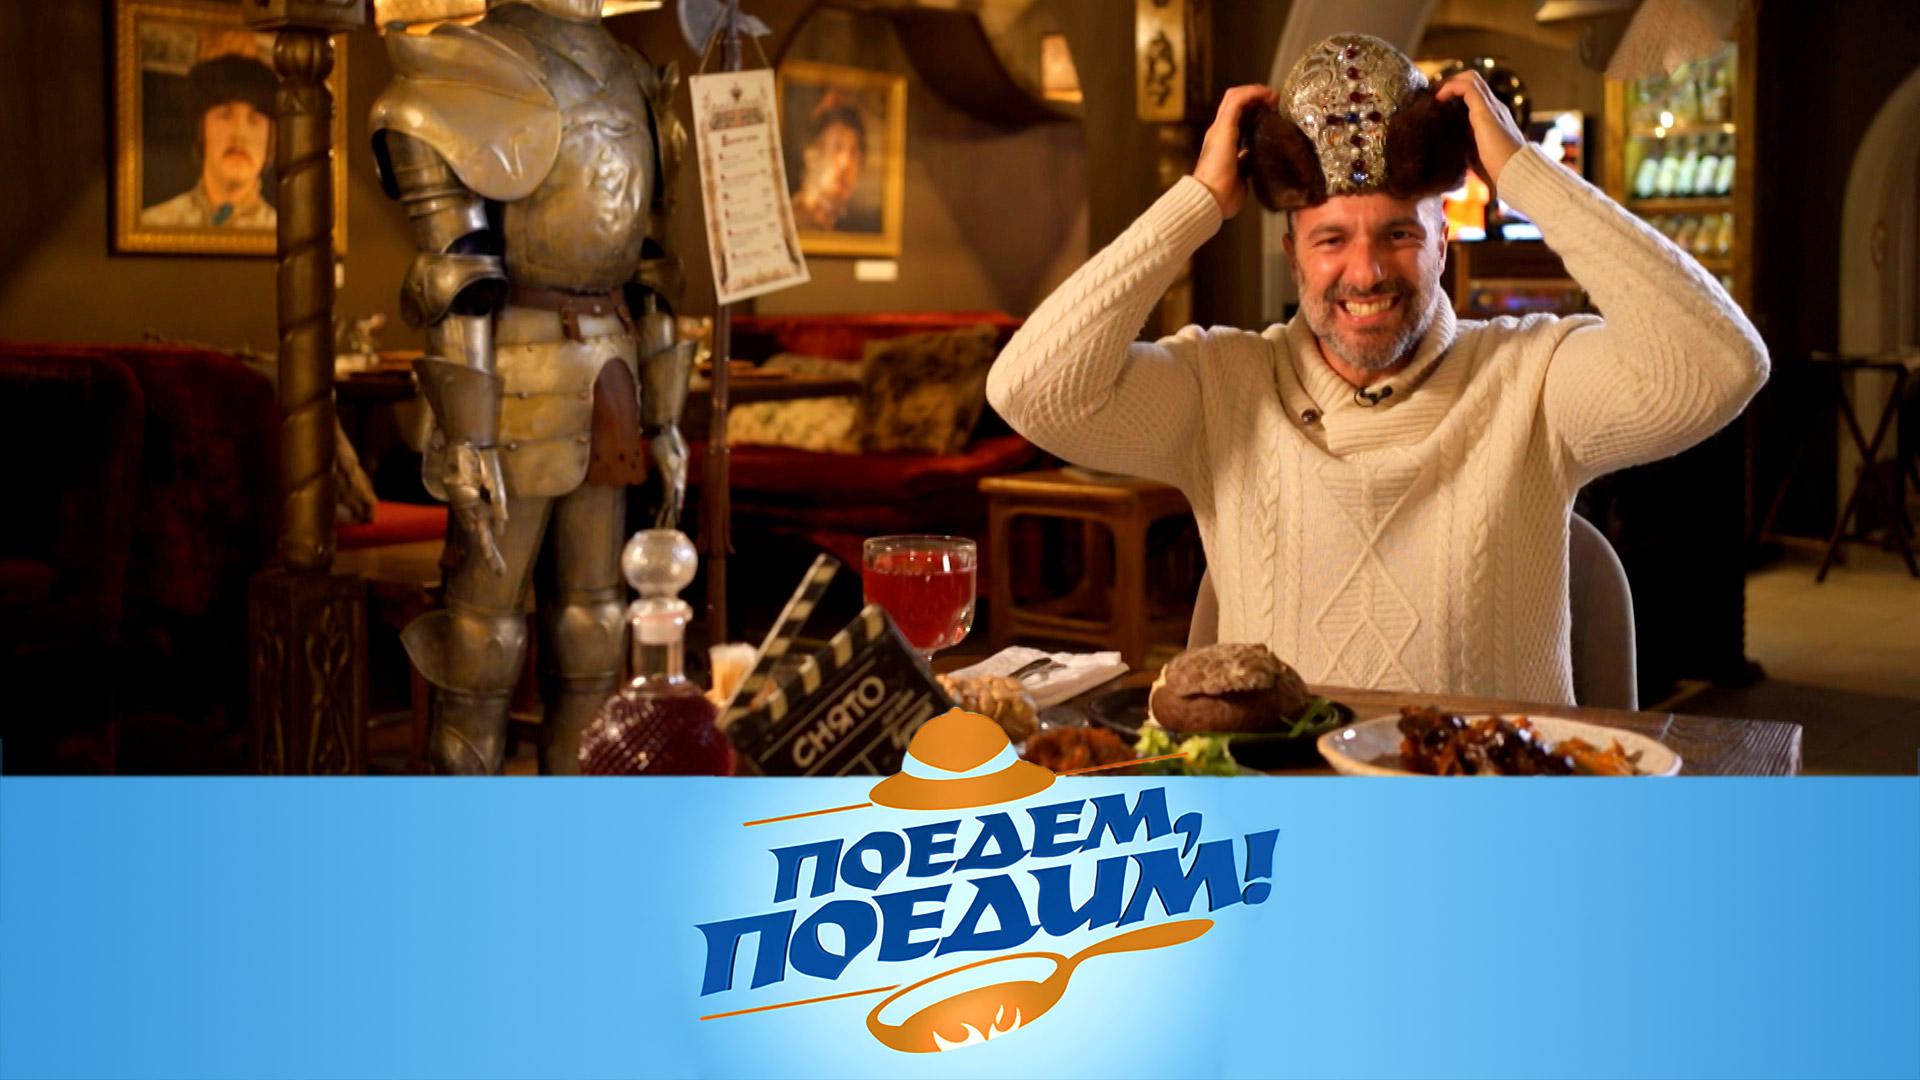 Ярославль: обед по-царски, блюда из селедки, медвежий бум и улитки-предсказатели | «Поедем, поедим!»